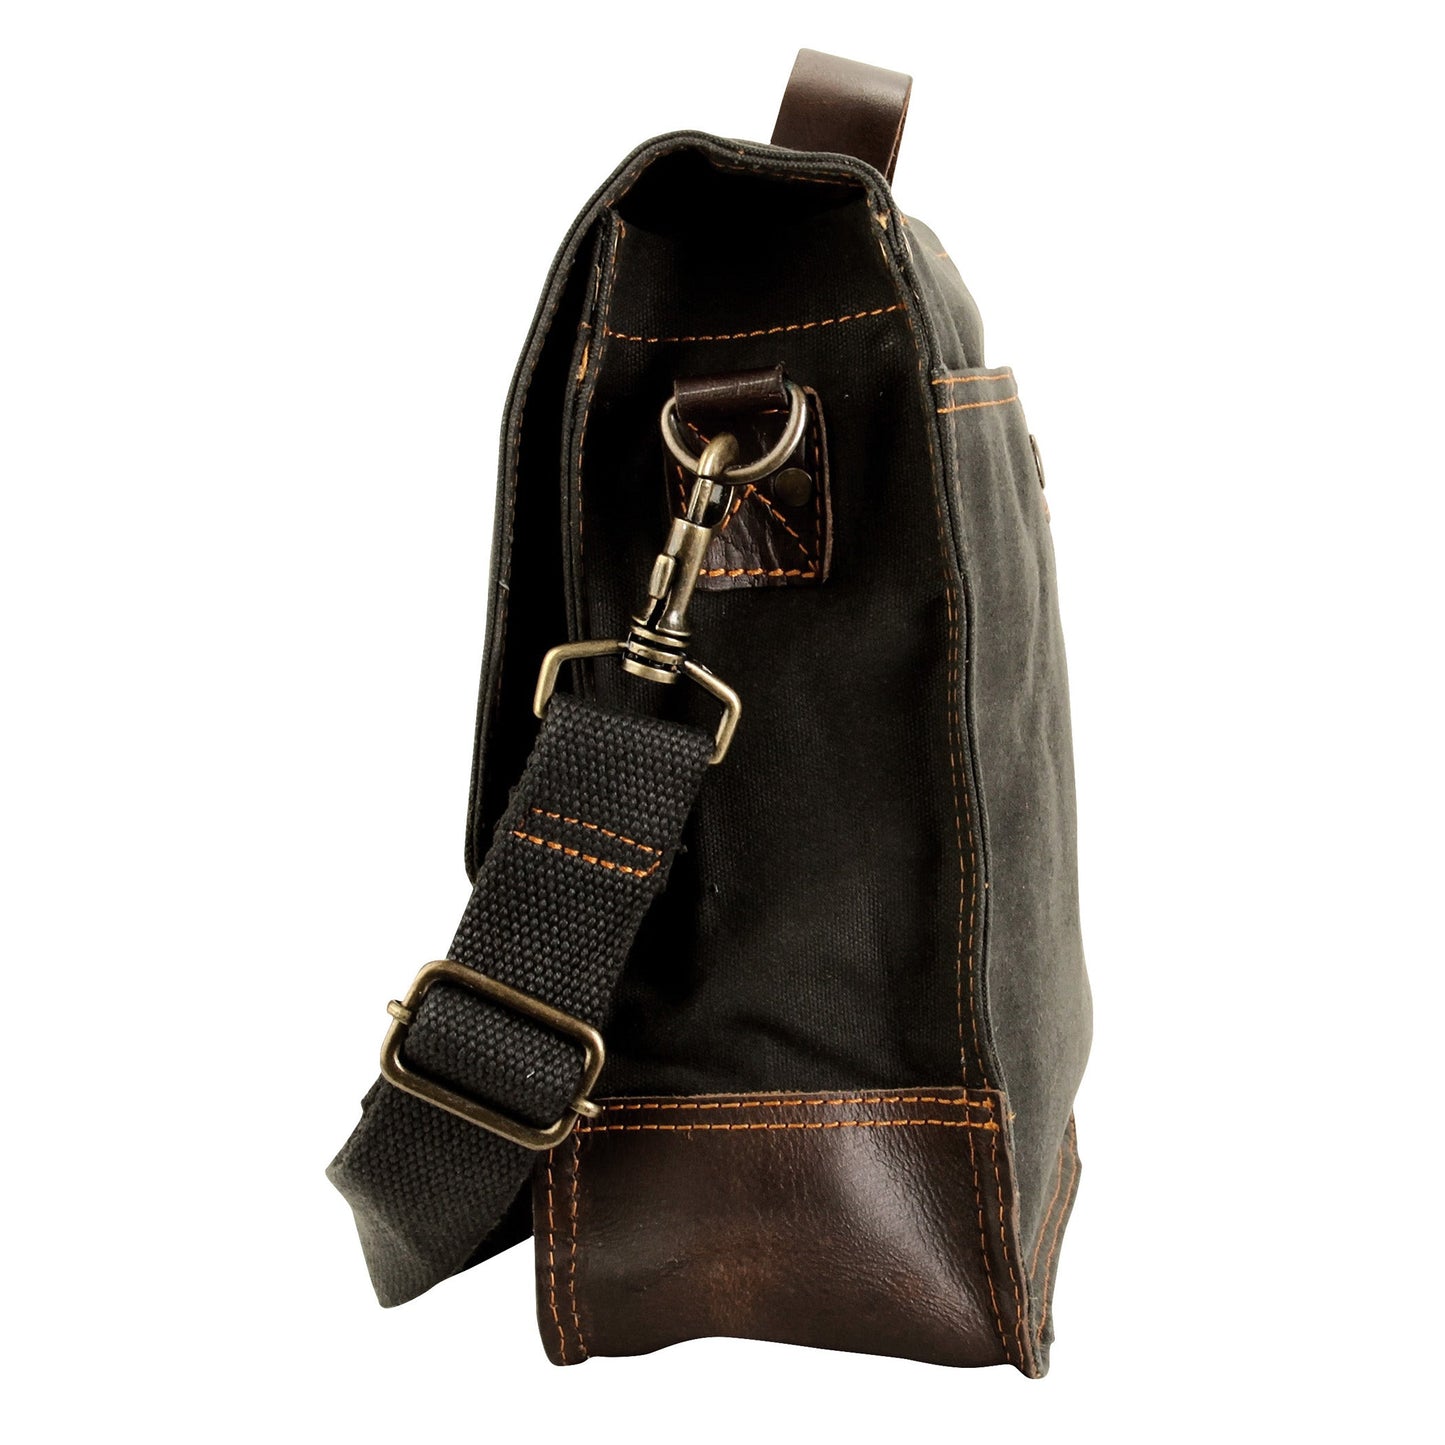 Work Bag - Messenger Bag - Canvas - Leather Handle for Men